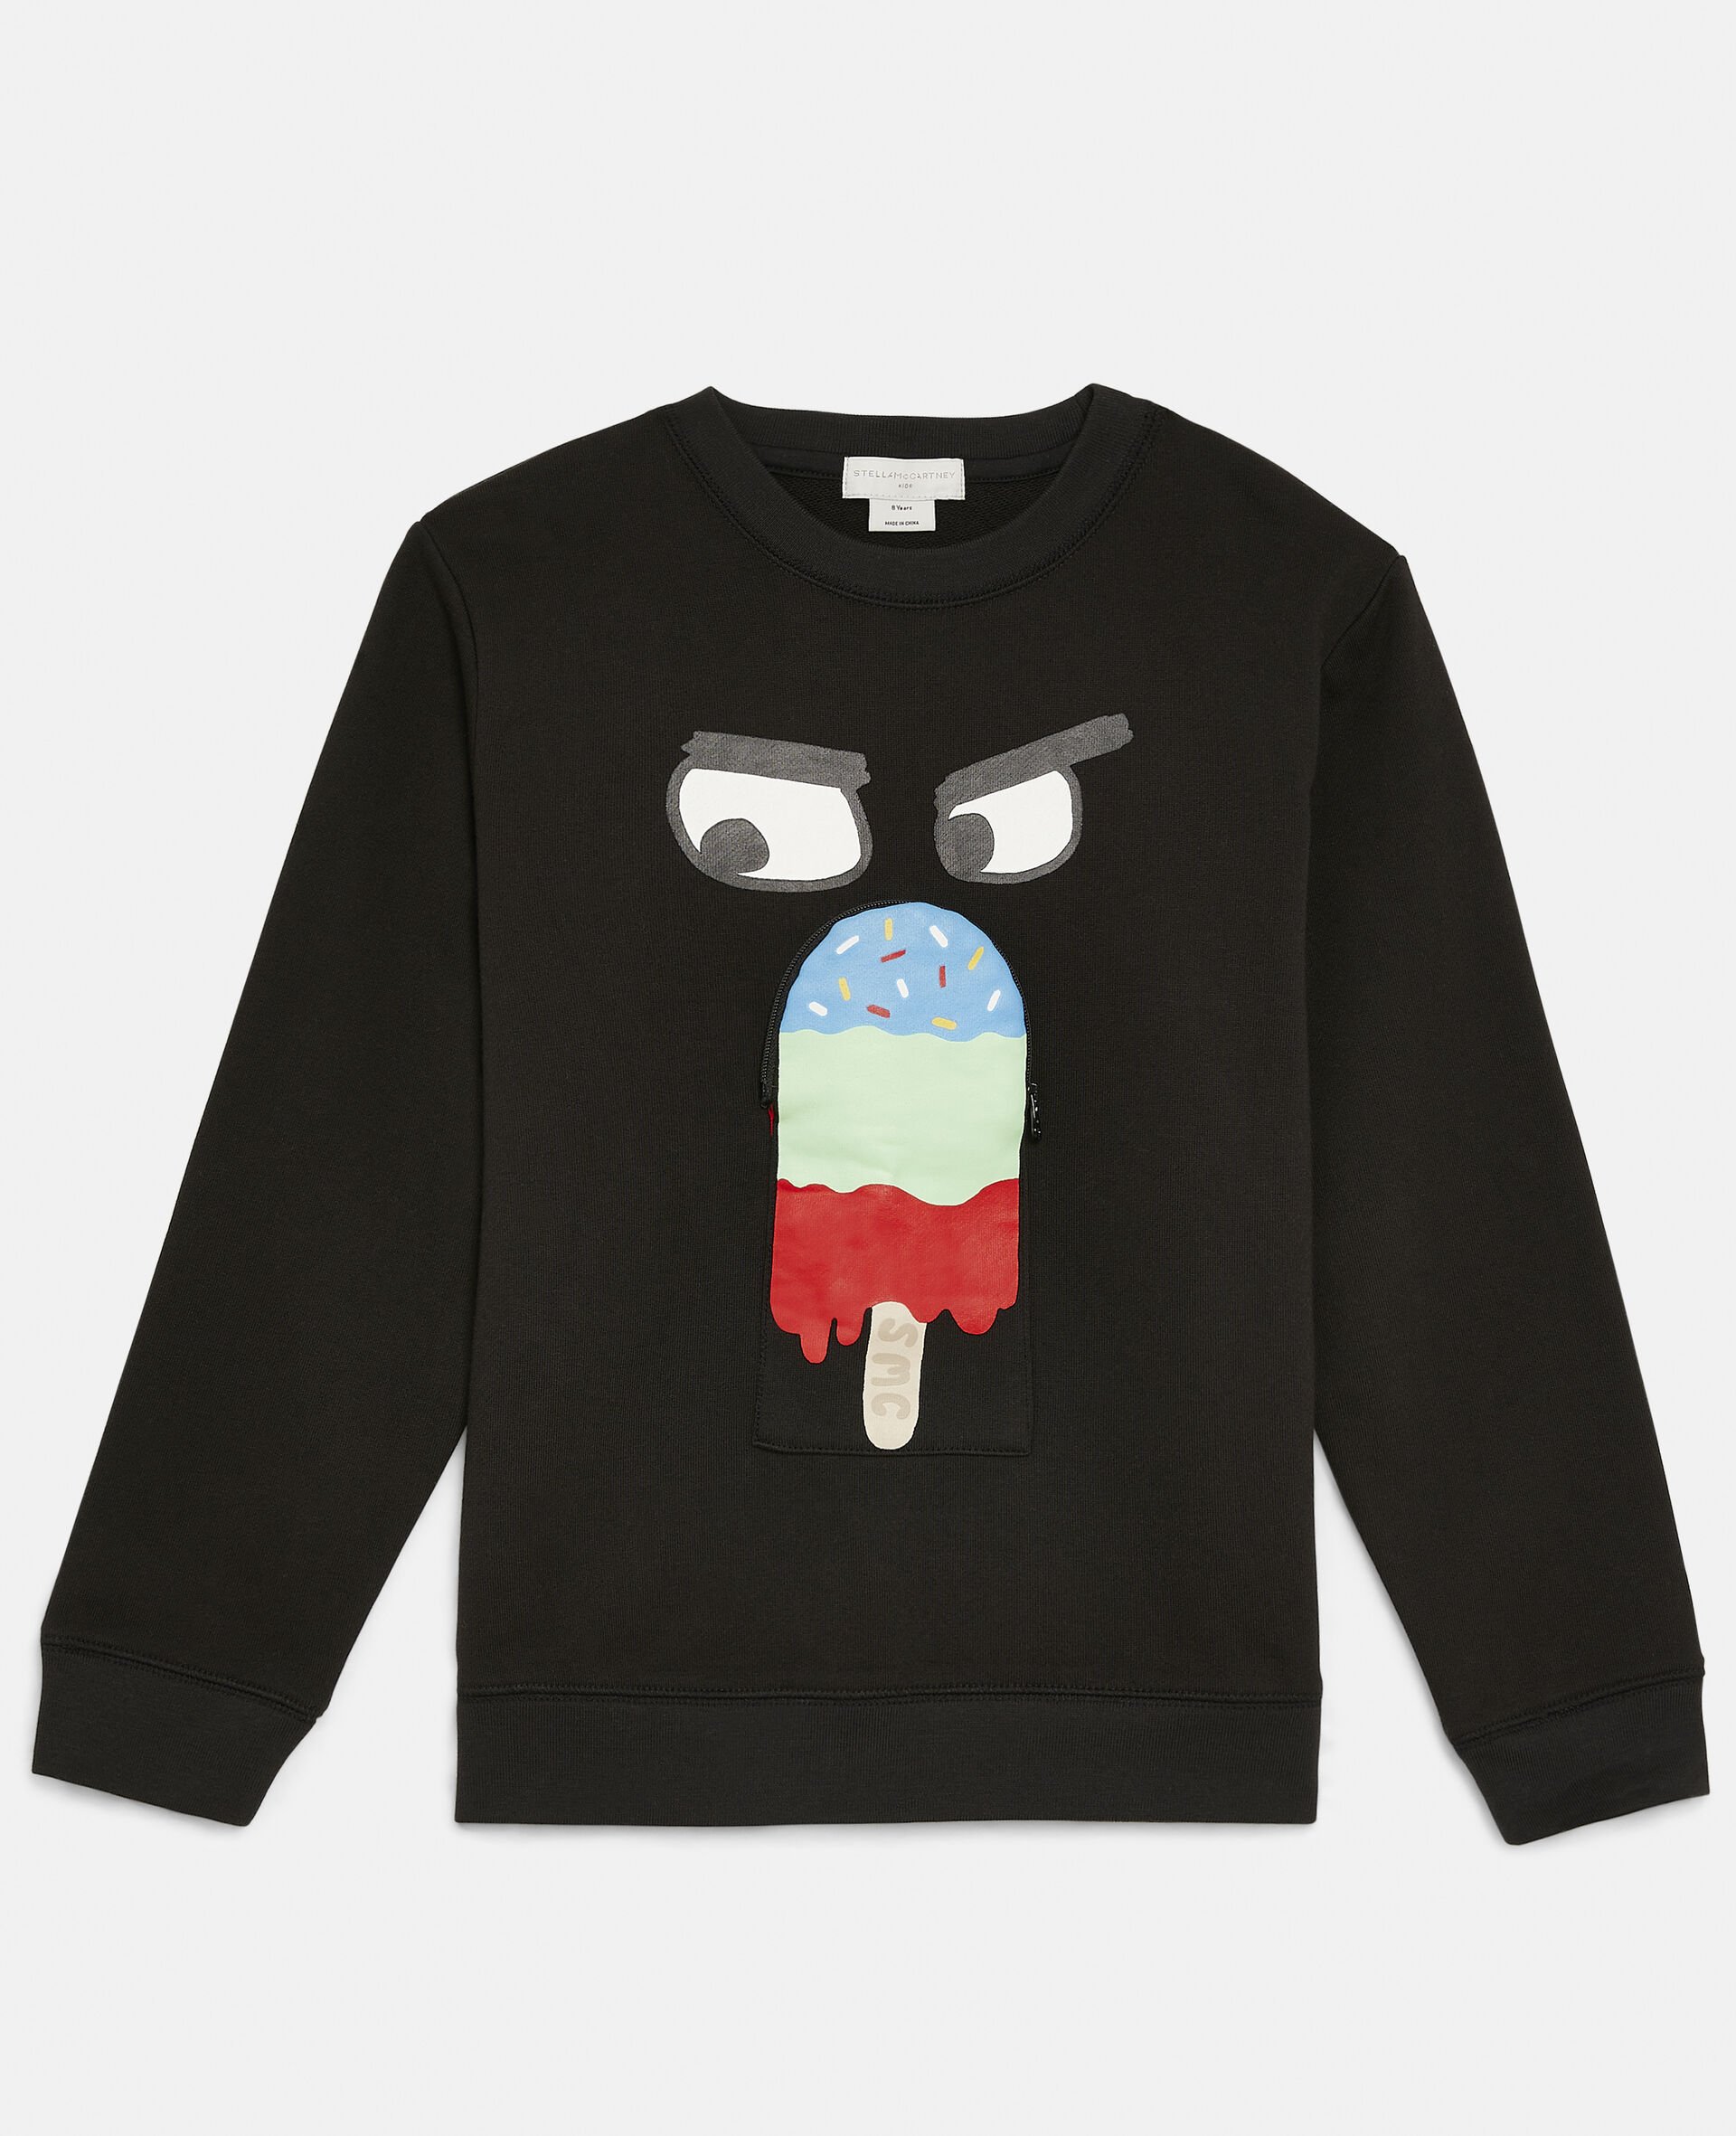 Popsicle Print Fleece Sweatshirt-Black-large